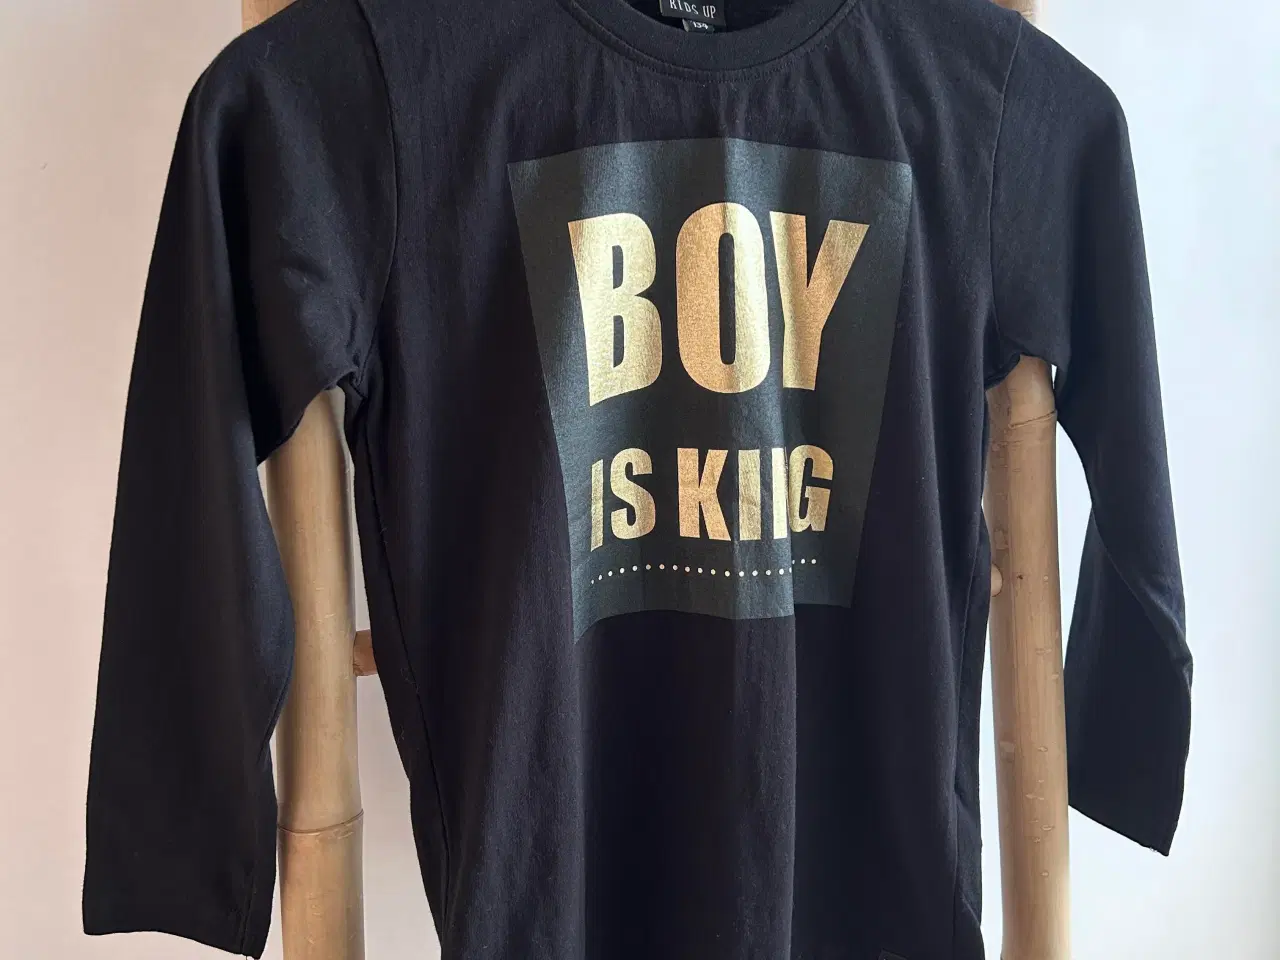 Billede 2 - Kids Up bluse med tryk 'BOY IS KING', str. 128-134